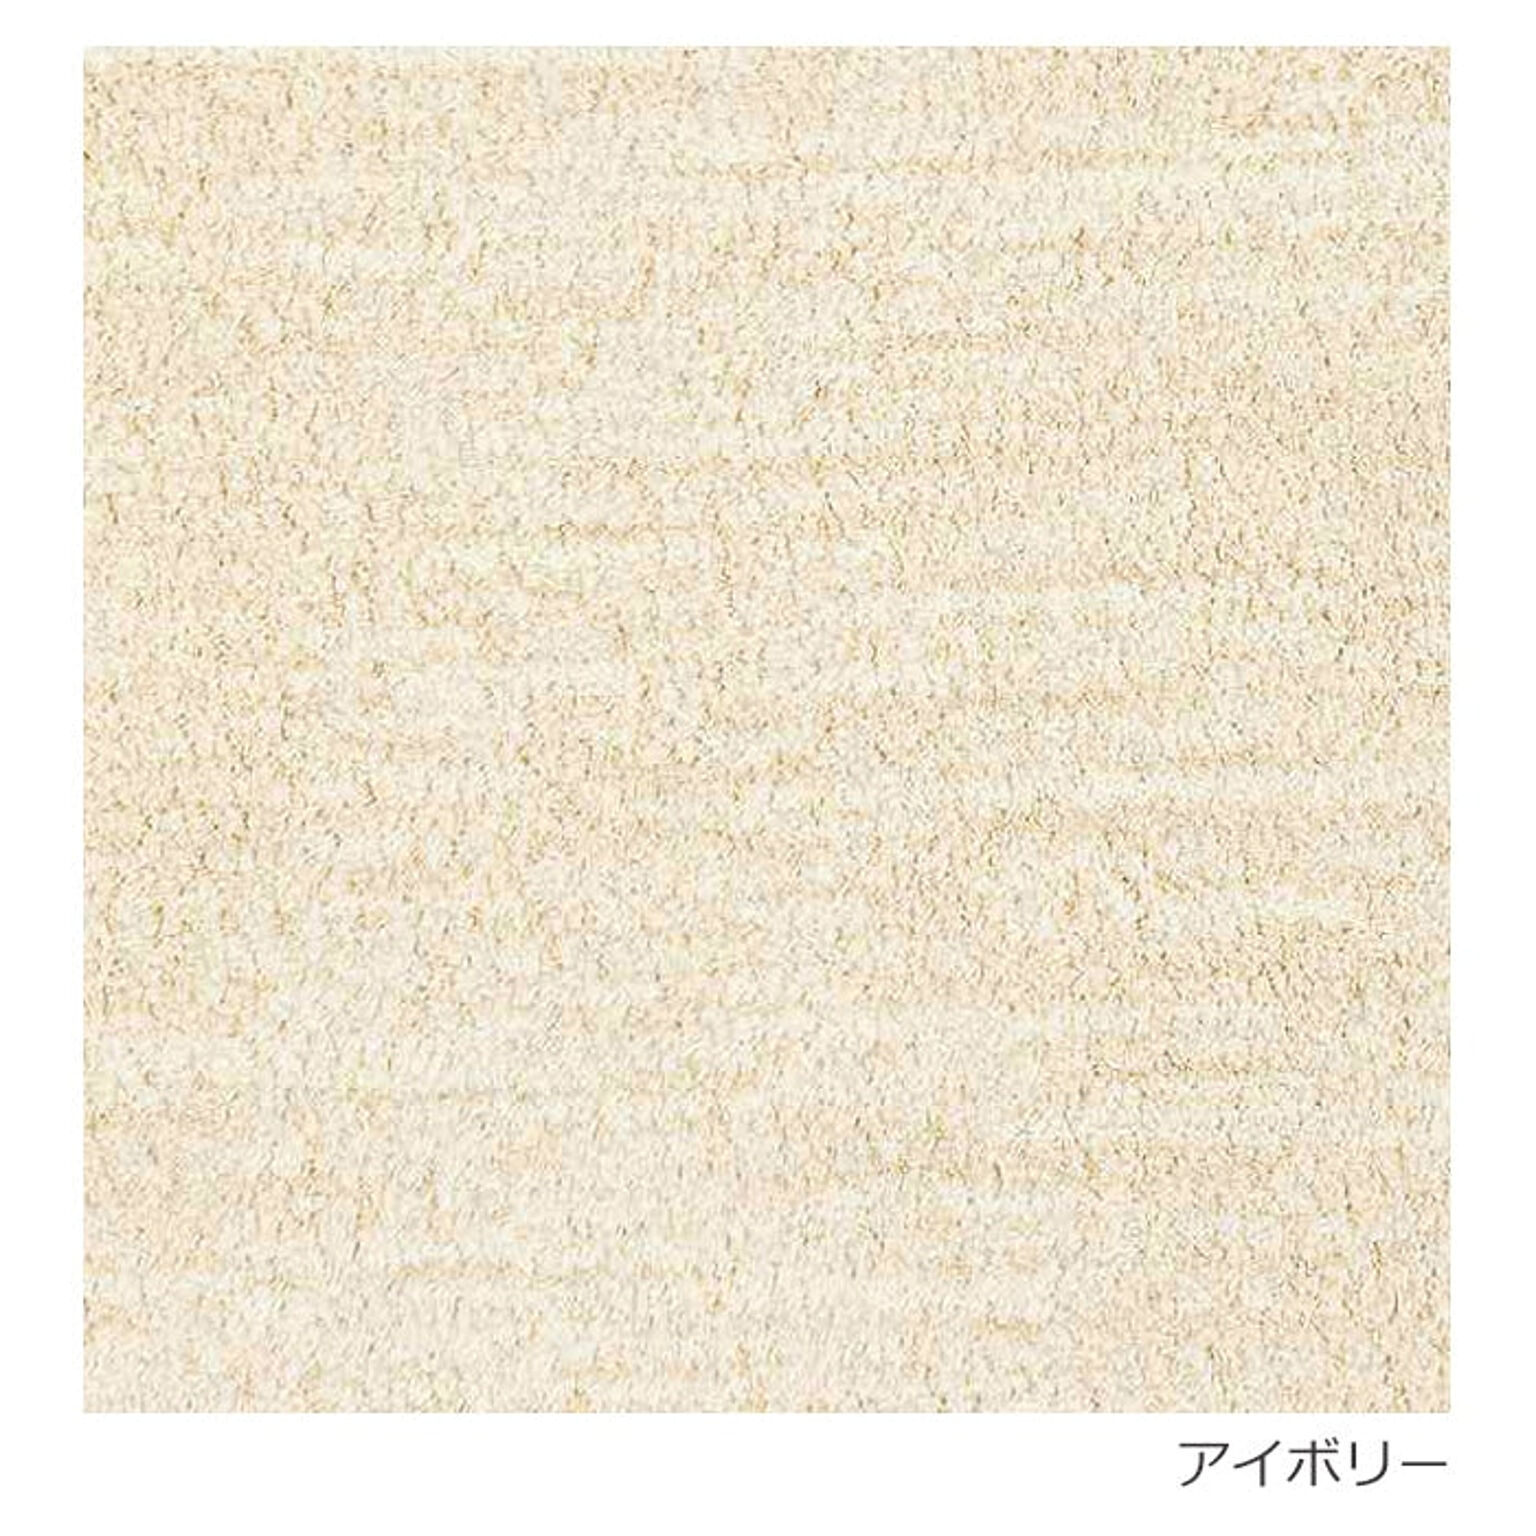 ラグ ラグマット 日本製 絨毯 Prevell プレーベル ロブ 約140×200cm アクリル シンプル アイボリー ブラウン レッド グリーン 引っ越し 新生活